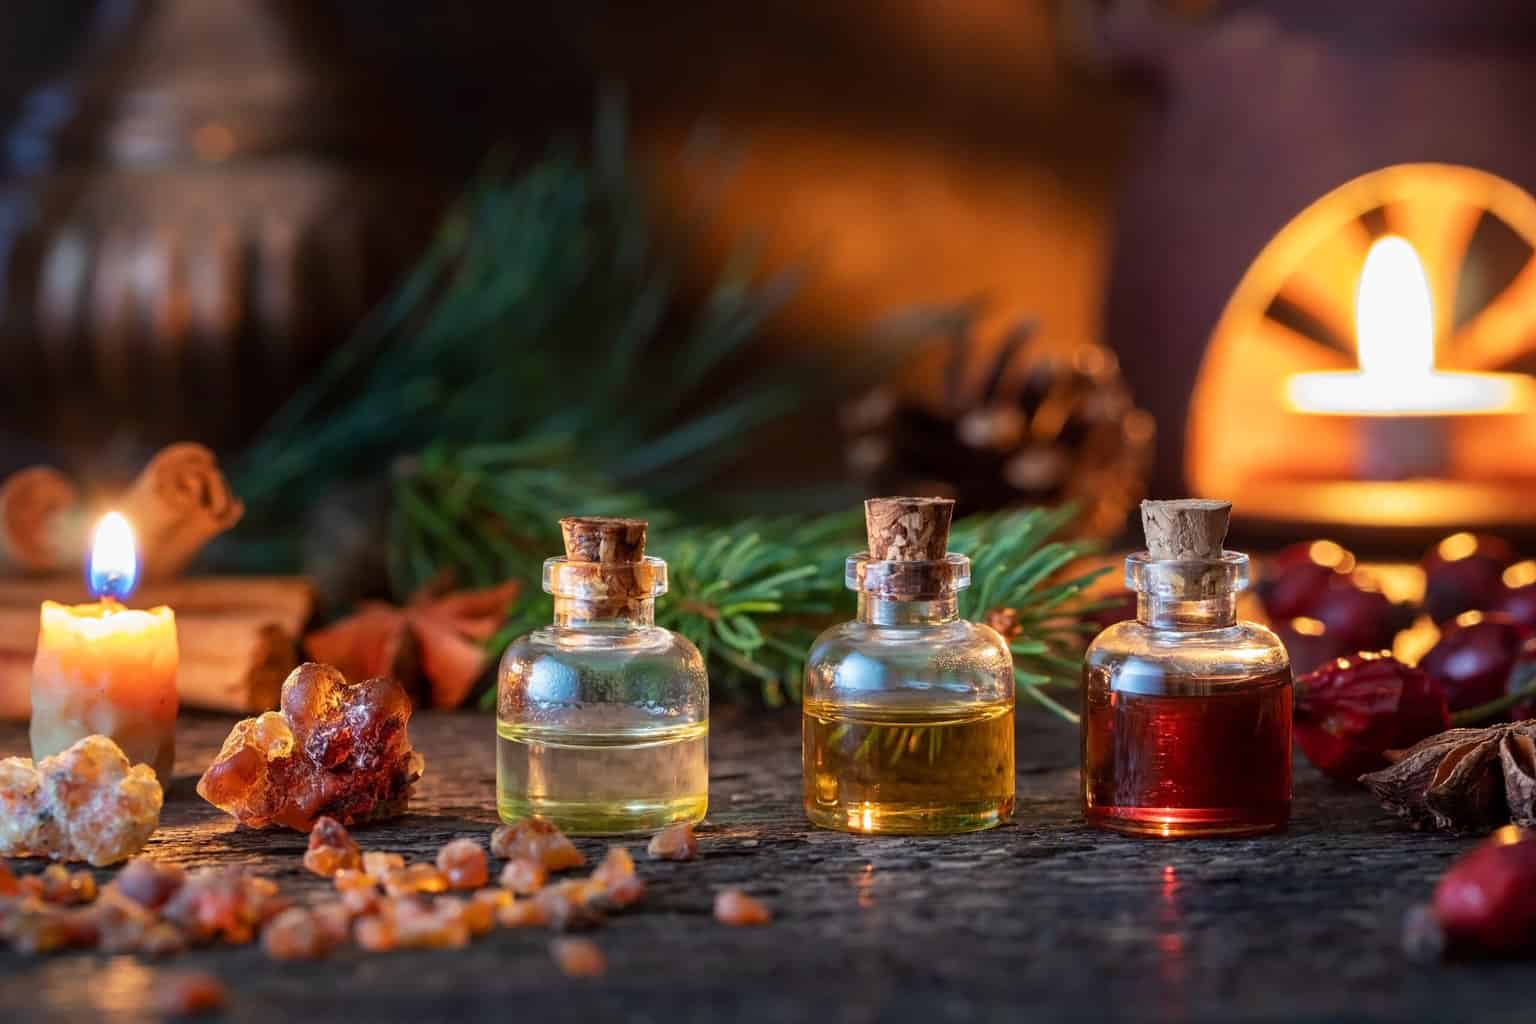 christmas smell essential oils diffuser recipes